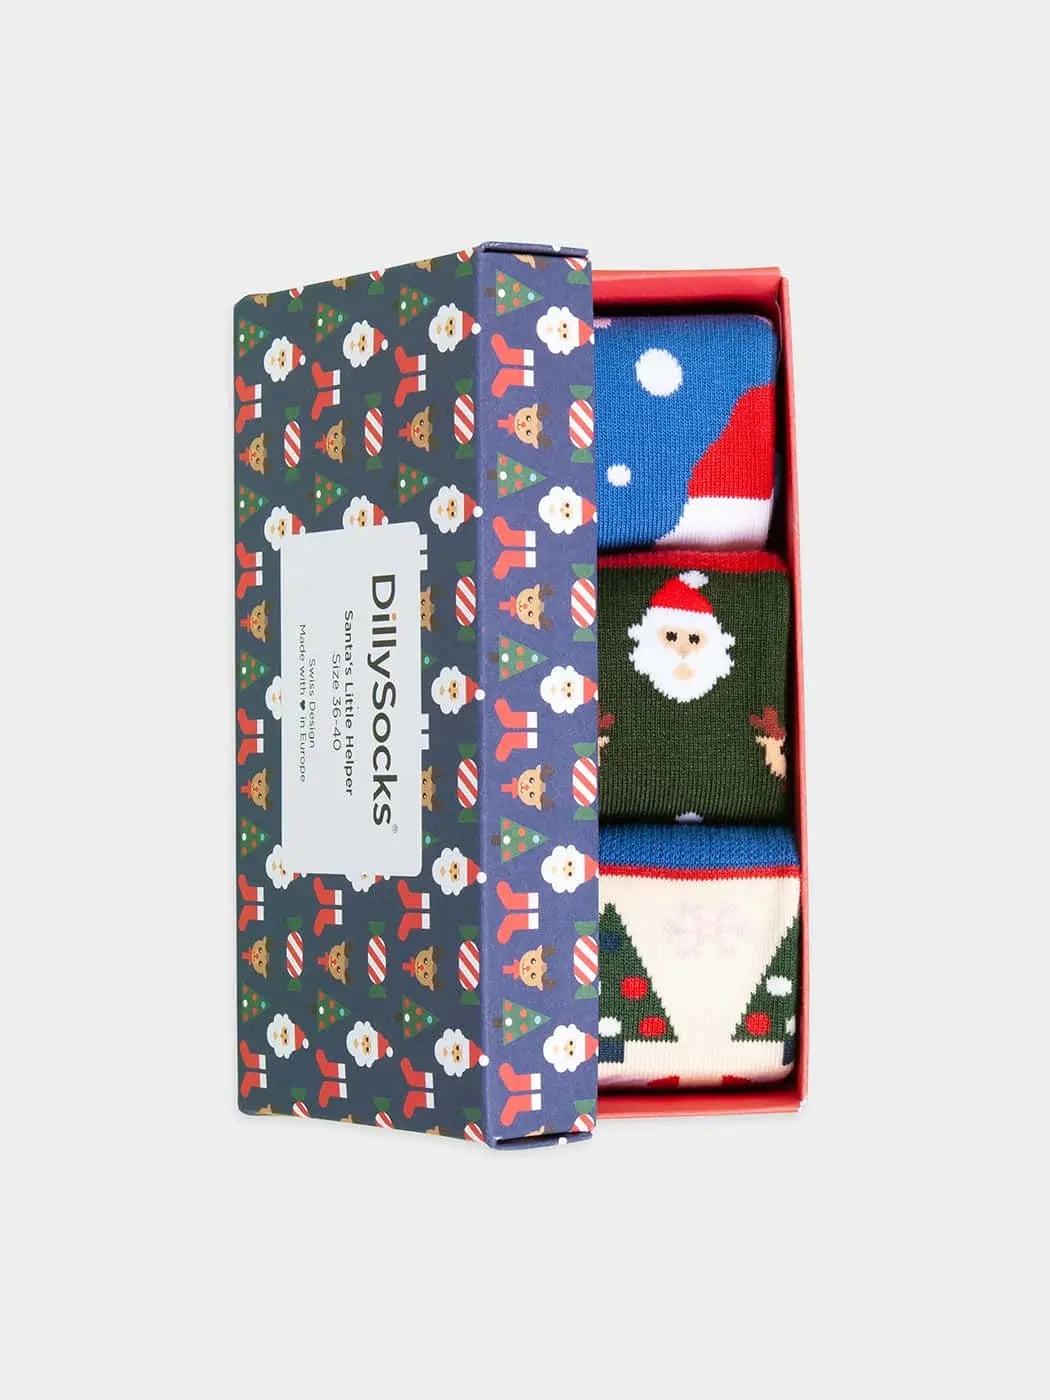 - Socken-Geschenkbox in Blau Grün Rot mit Weihnachten Motiv/Muster von DillySocks